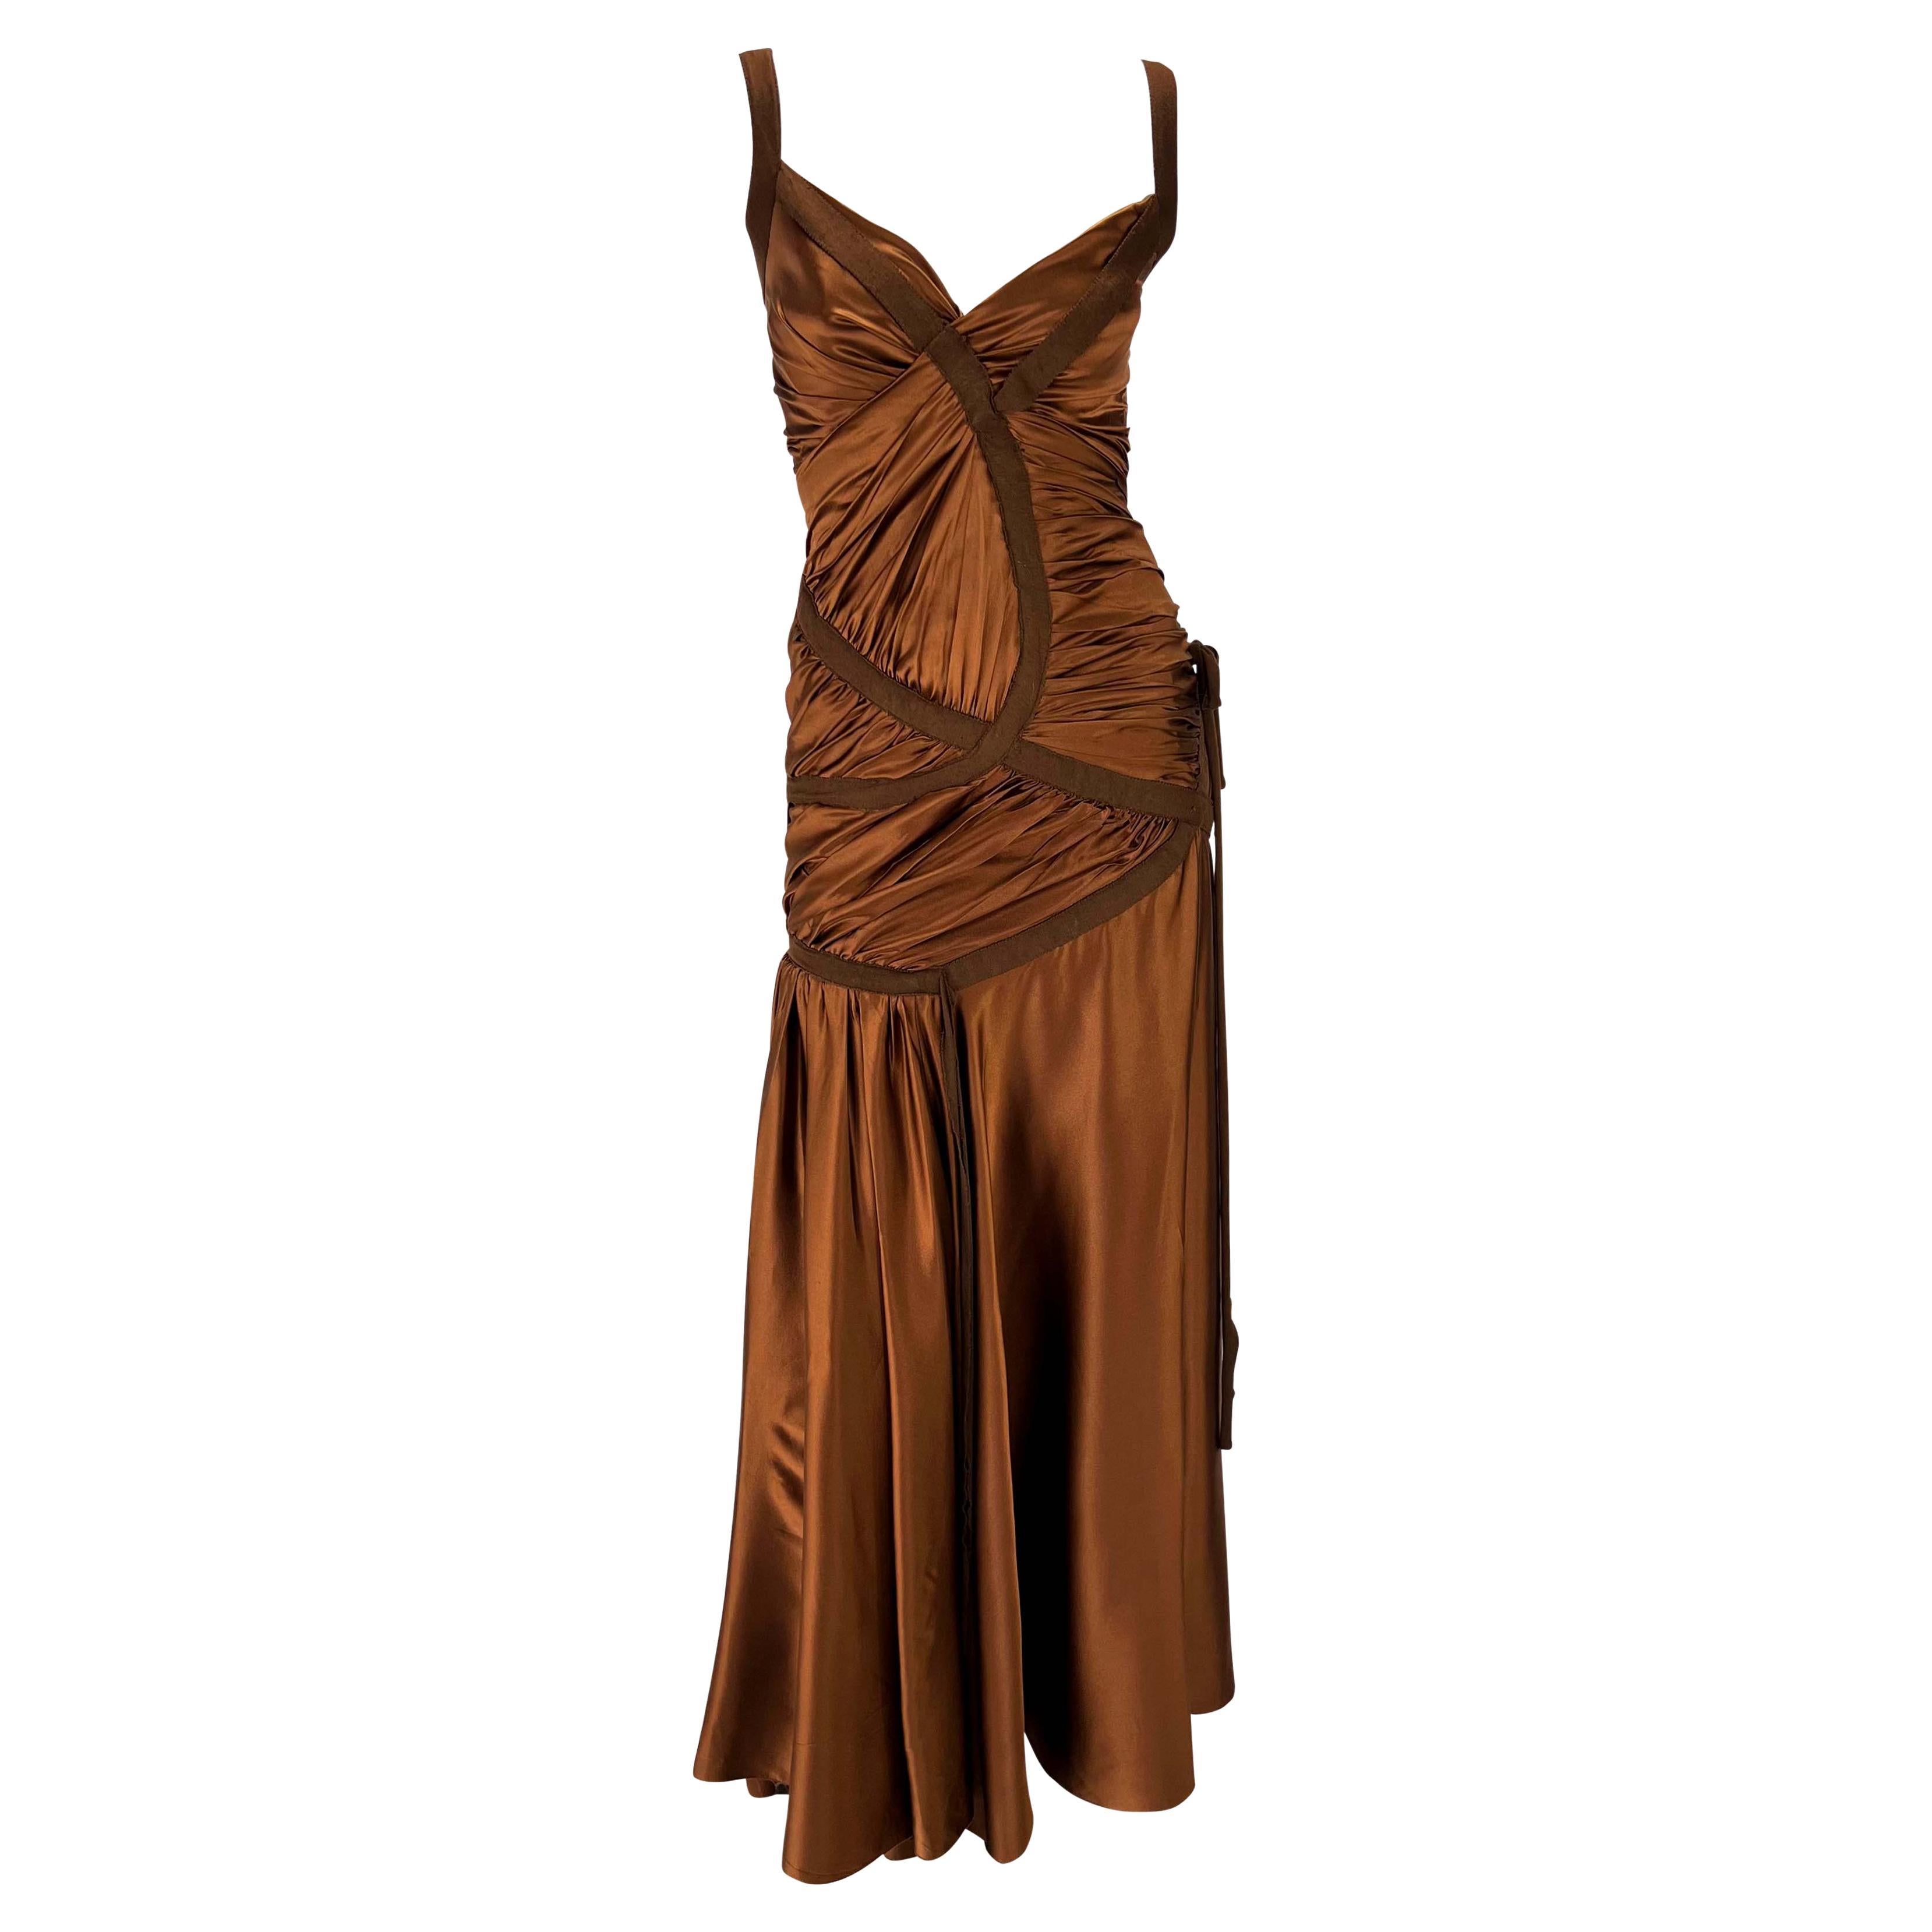 Donna Karan - Authenticated Dress - Silk Black Plain for Women, Never Worn